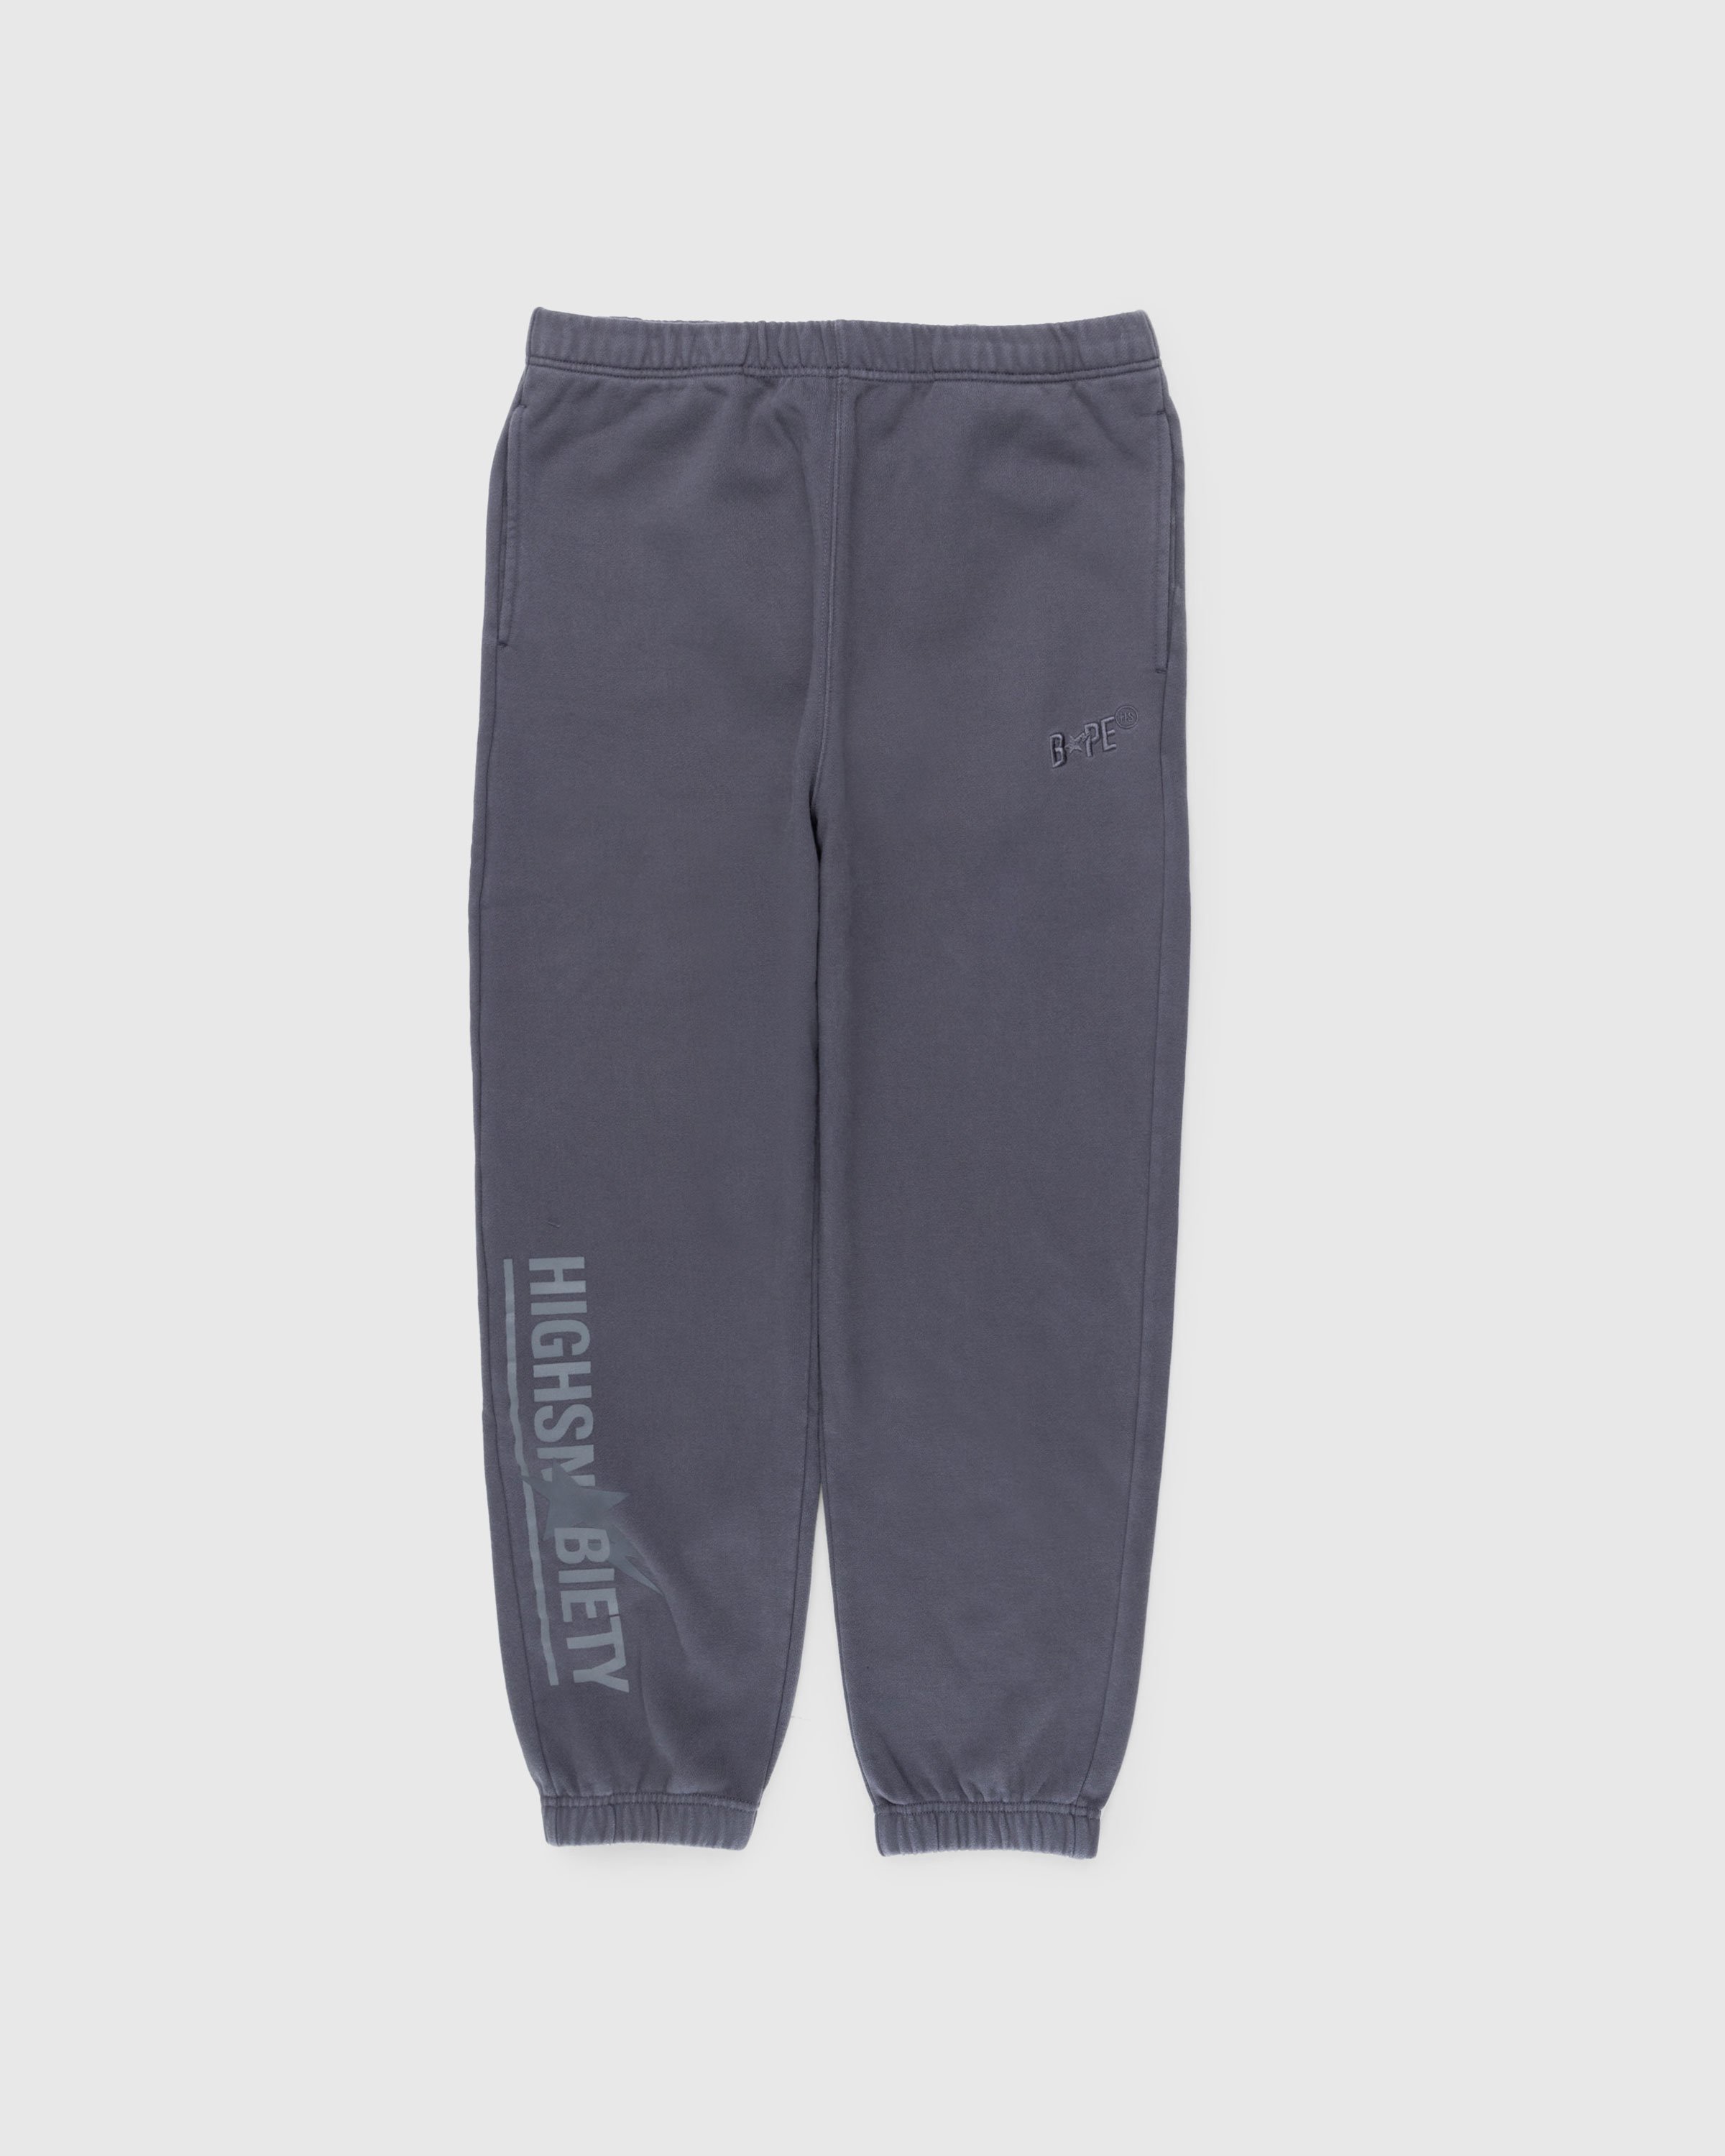 BAPE x Highsnobiety - Heavy Washed Sweat Pants Charcoal - Clothing - Grey - Image 1